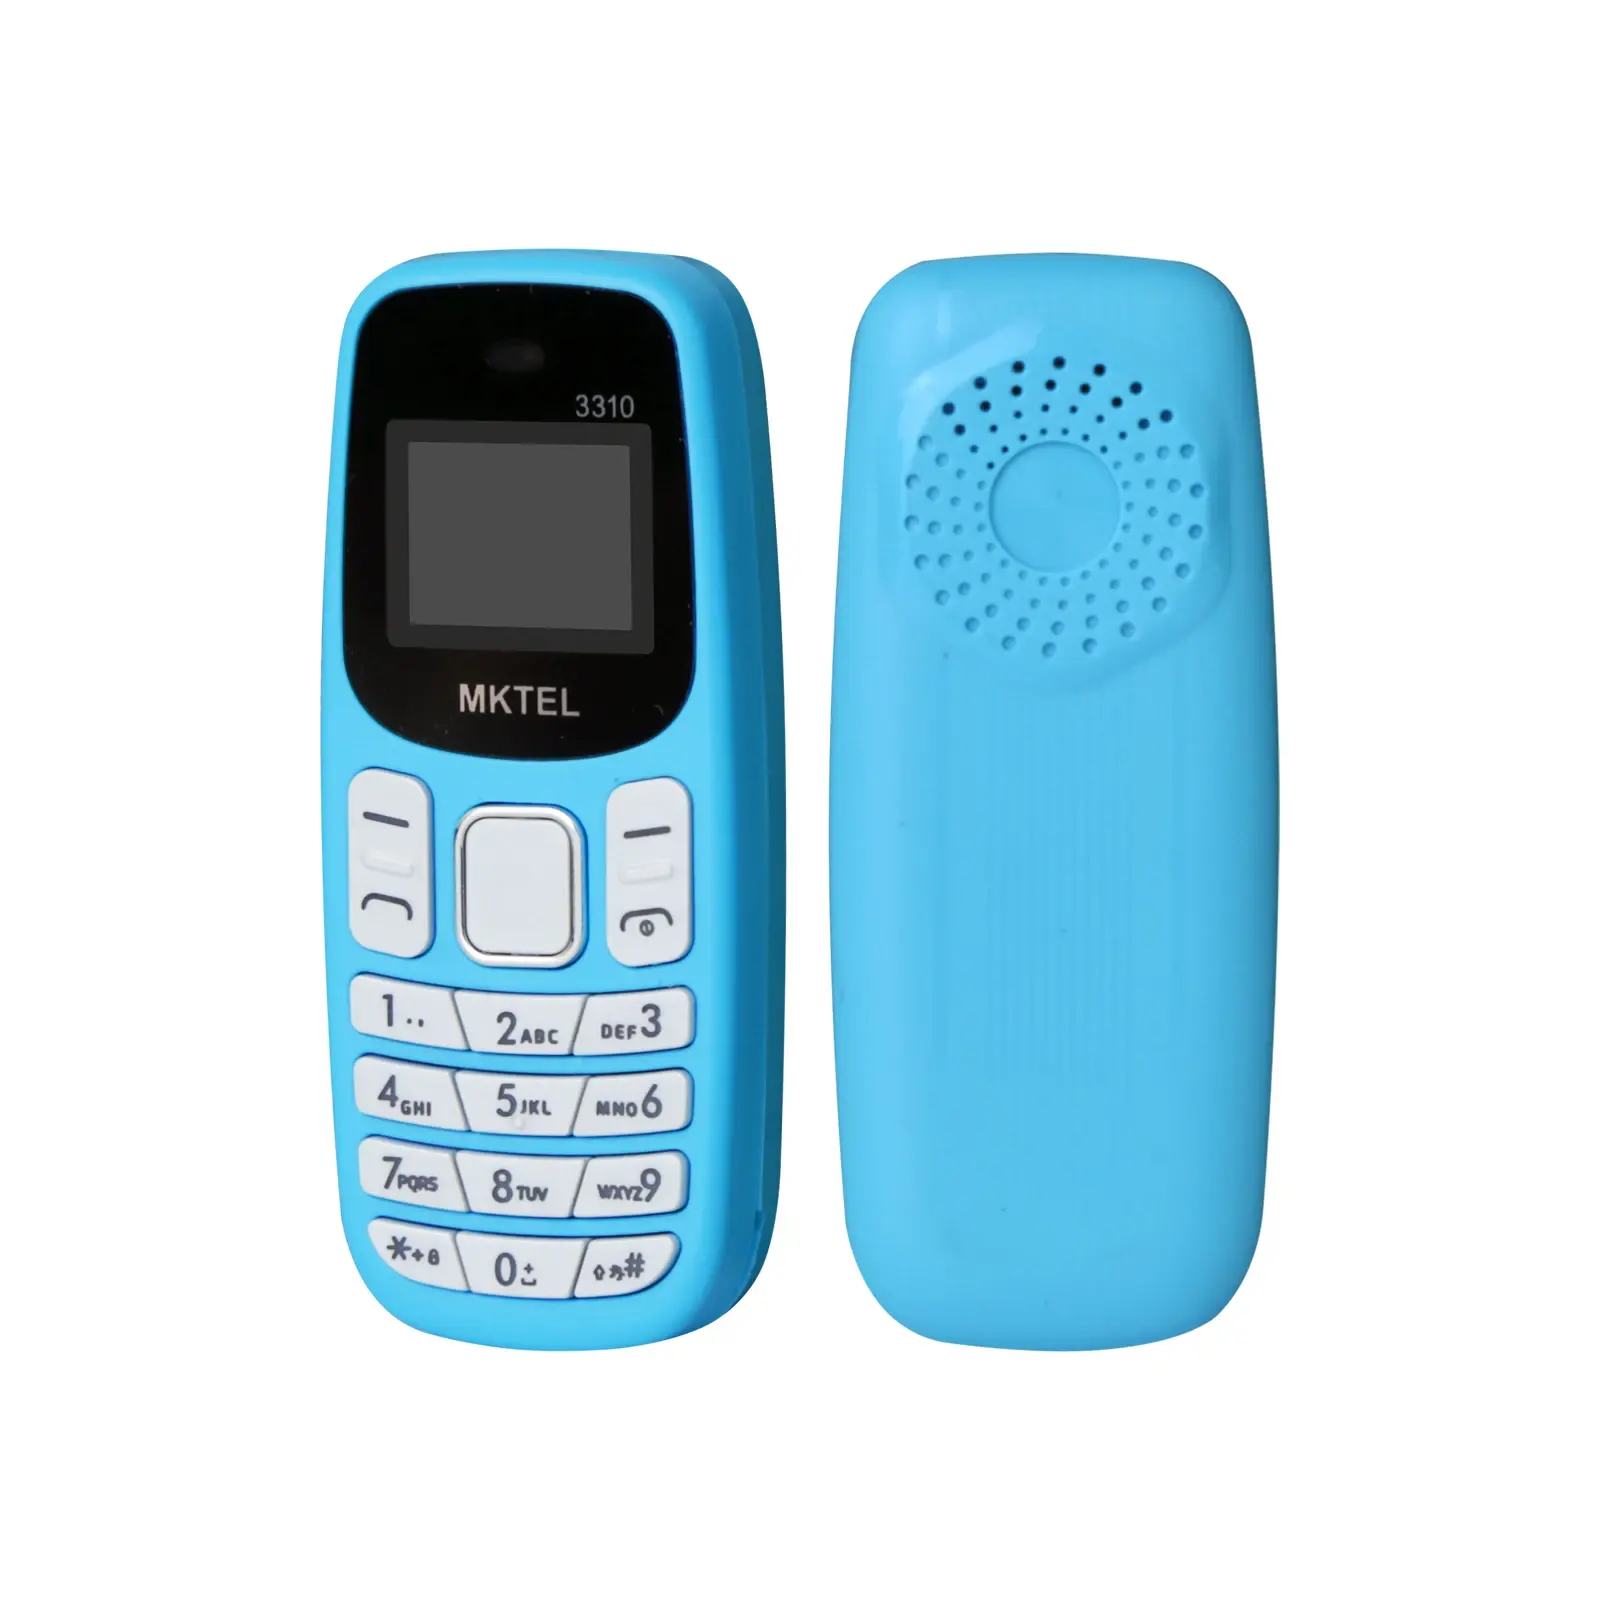 هاتف MKTEL 3310 صغير الحجم مزود بخطاف في الأذن ومزود بشريحتين ويمكنه الاستمتاع بملفات الوسائط MP3/MP4/FM والراديو/بلوتوث/GPRS